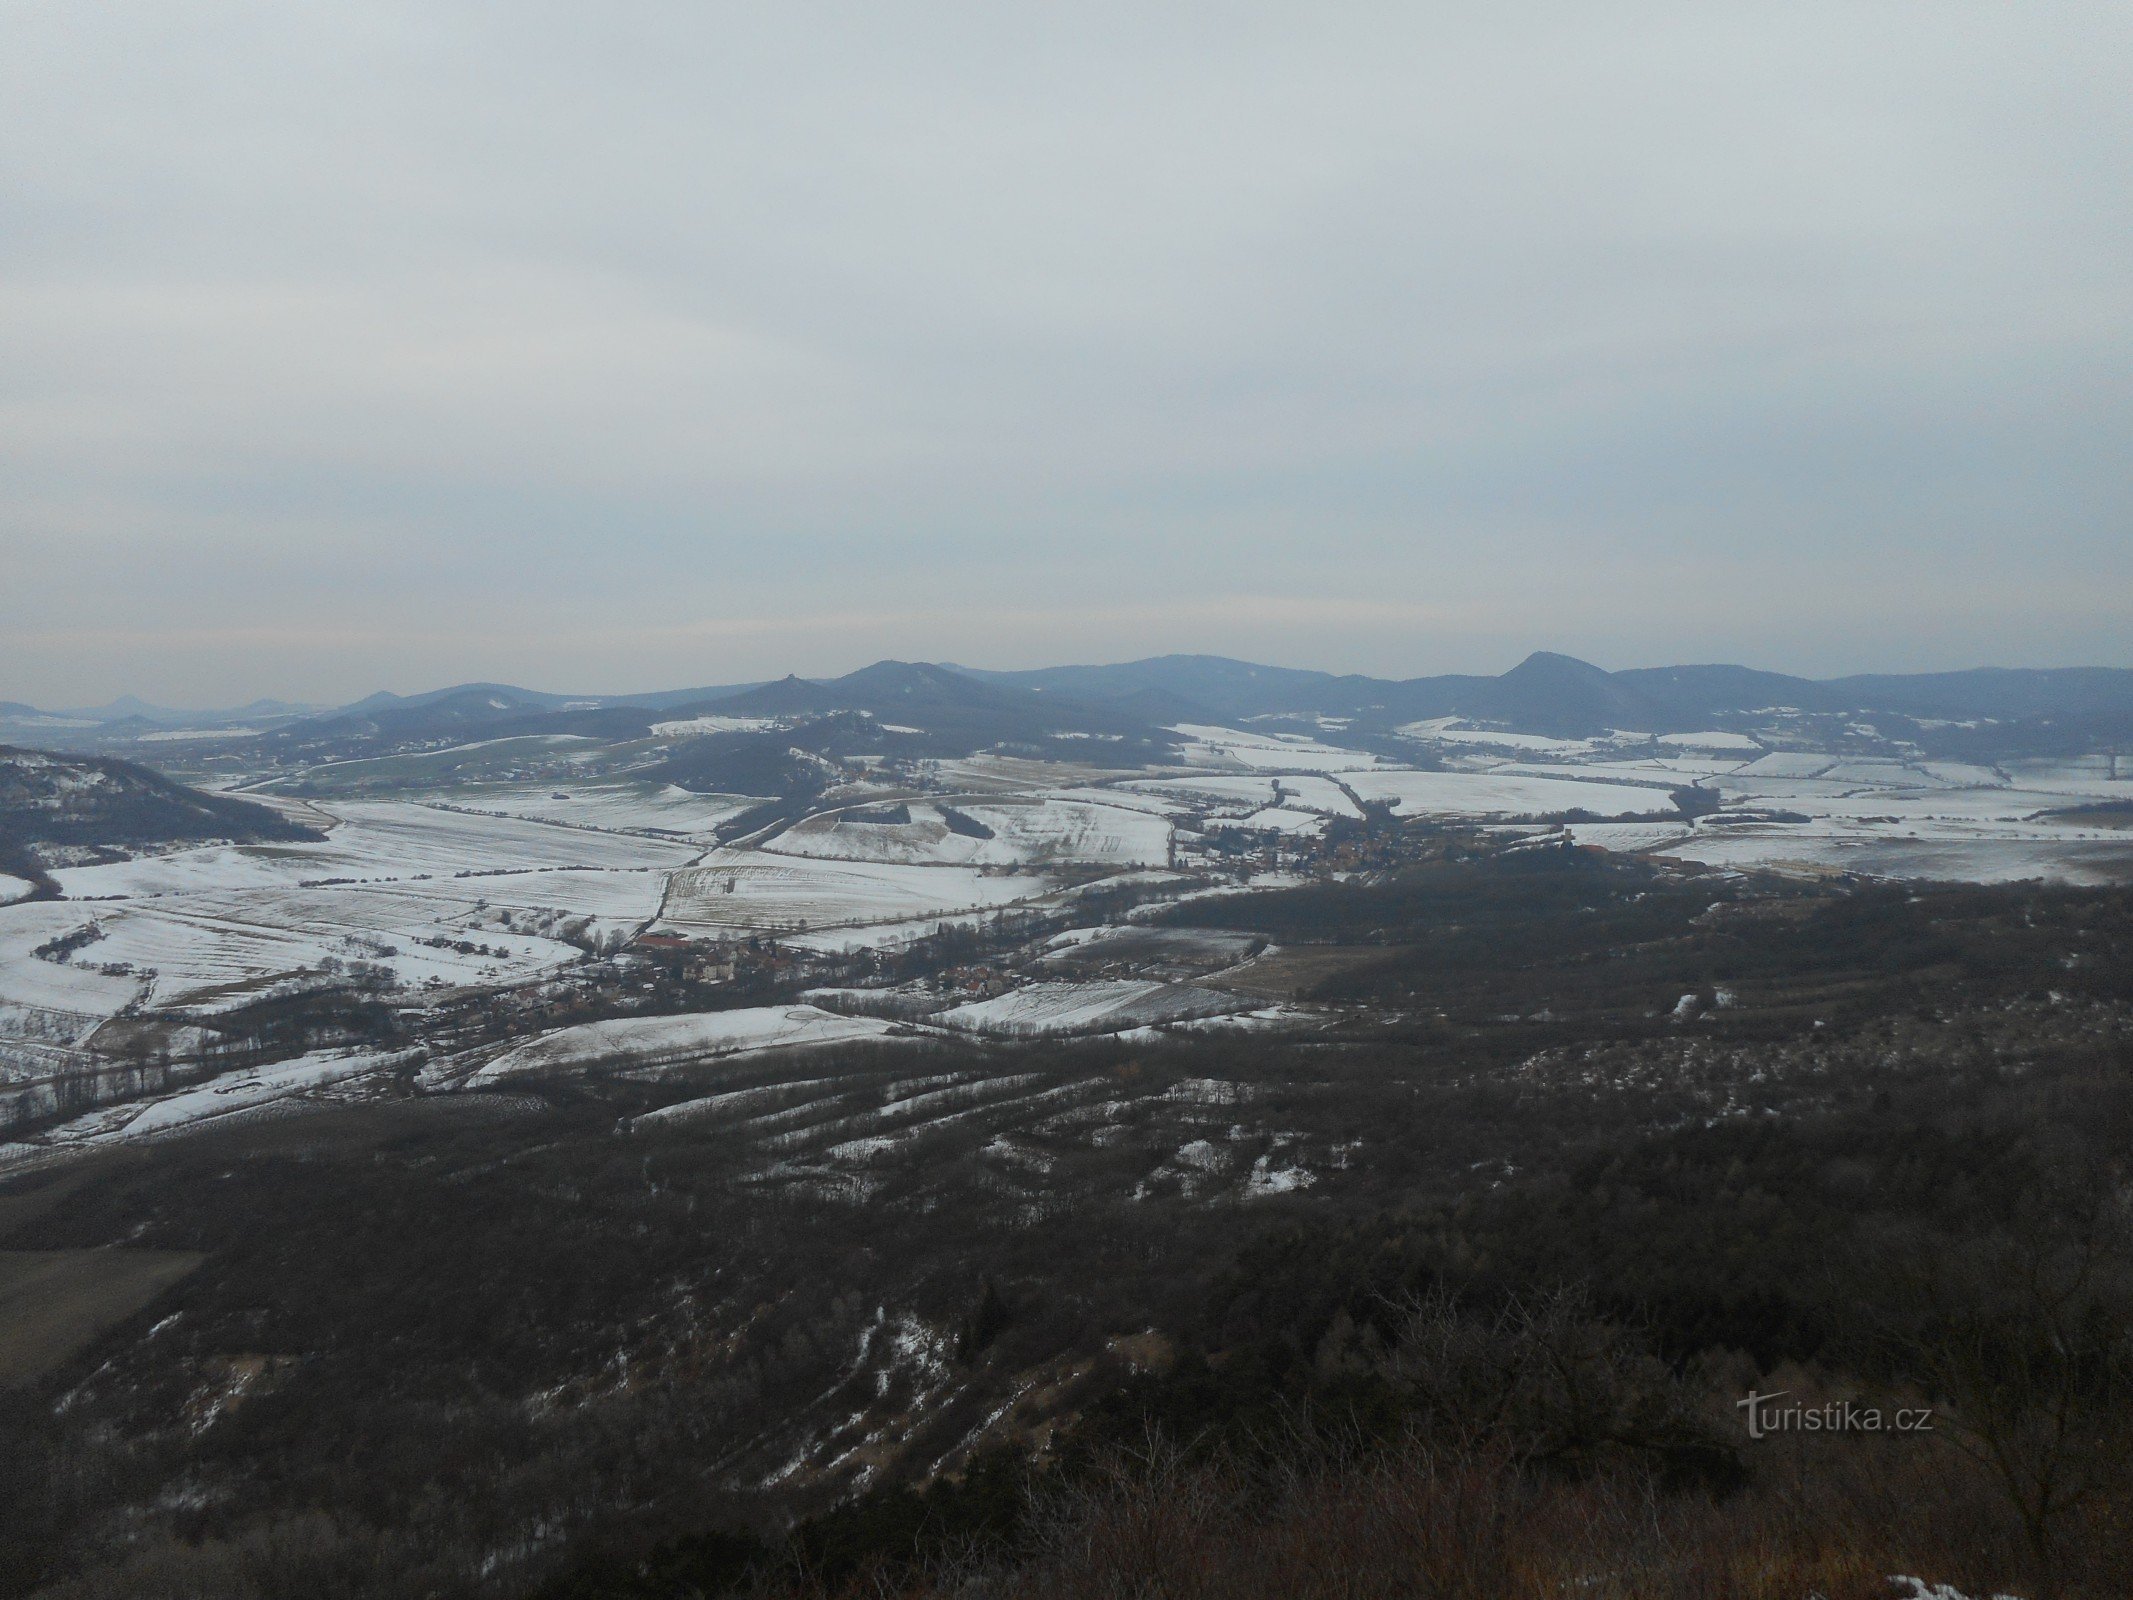 Utsikt från Košťálov åt sydväst...